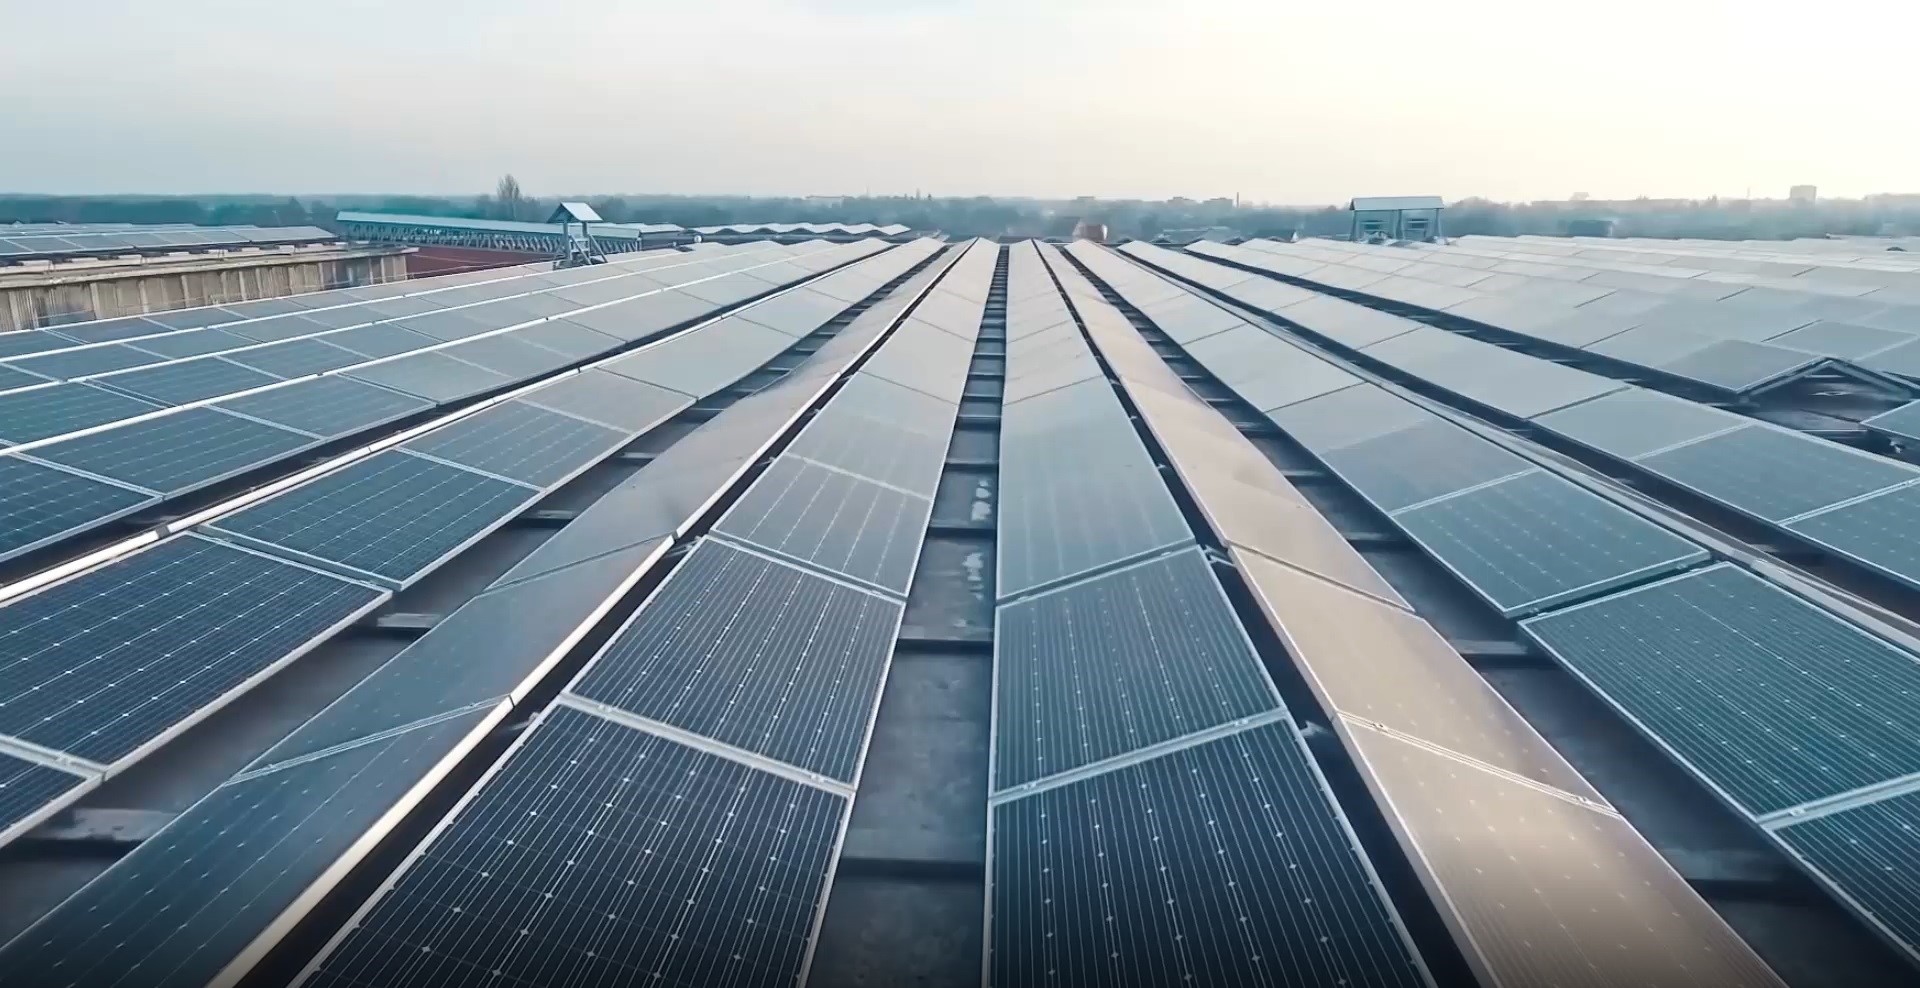 Overzicht van honderden zonnepanelen op het dak van een bedrijfspand